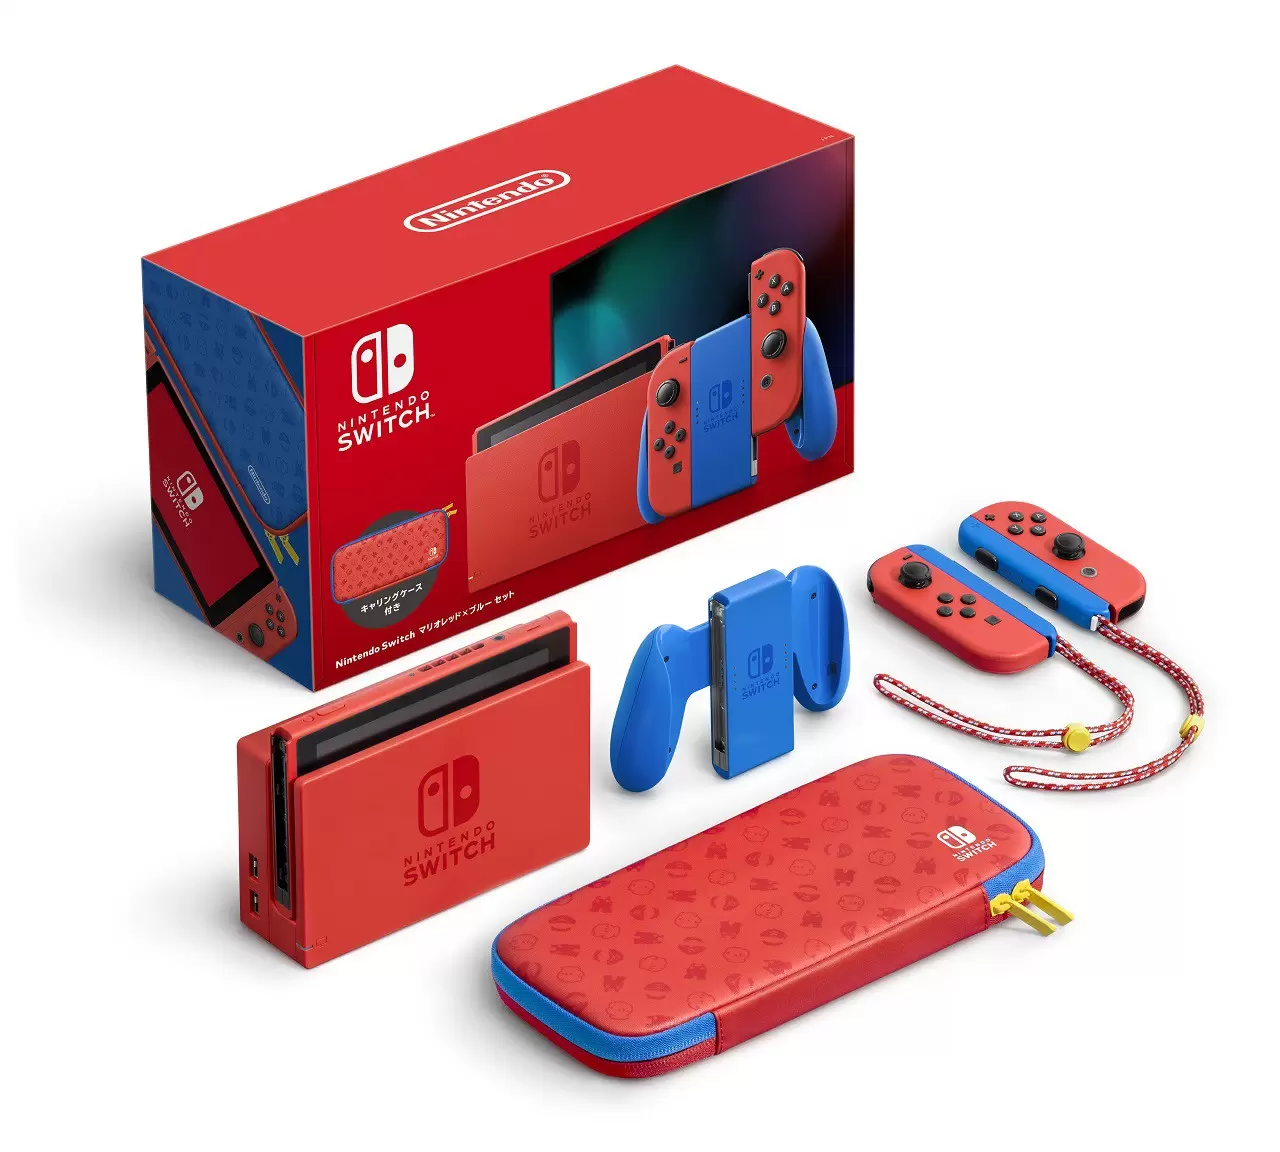 Nintendo switch 本体 ブルー&レッド家庭用ゲーム機本体